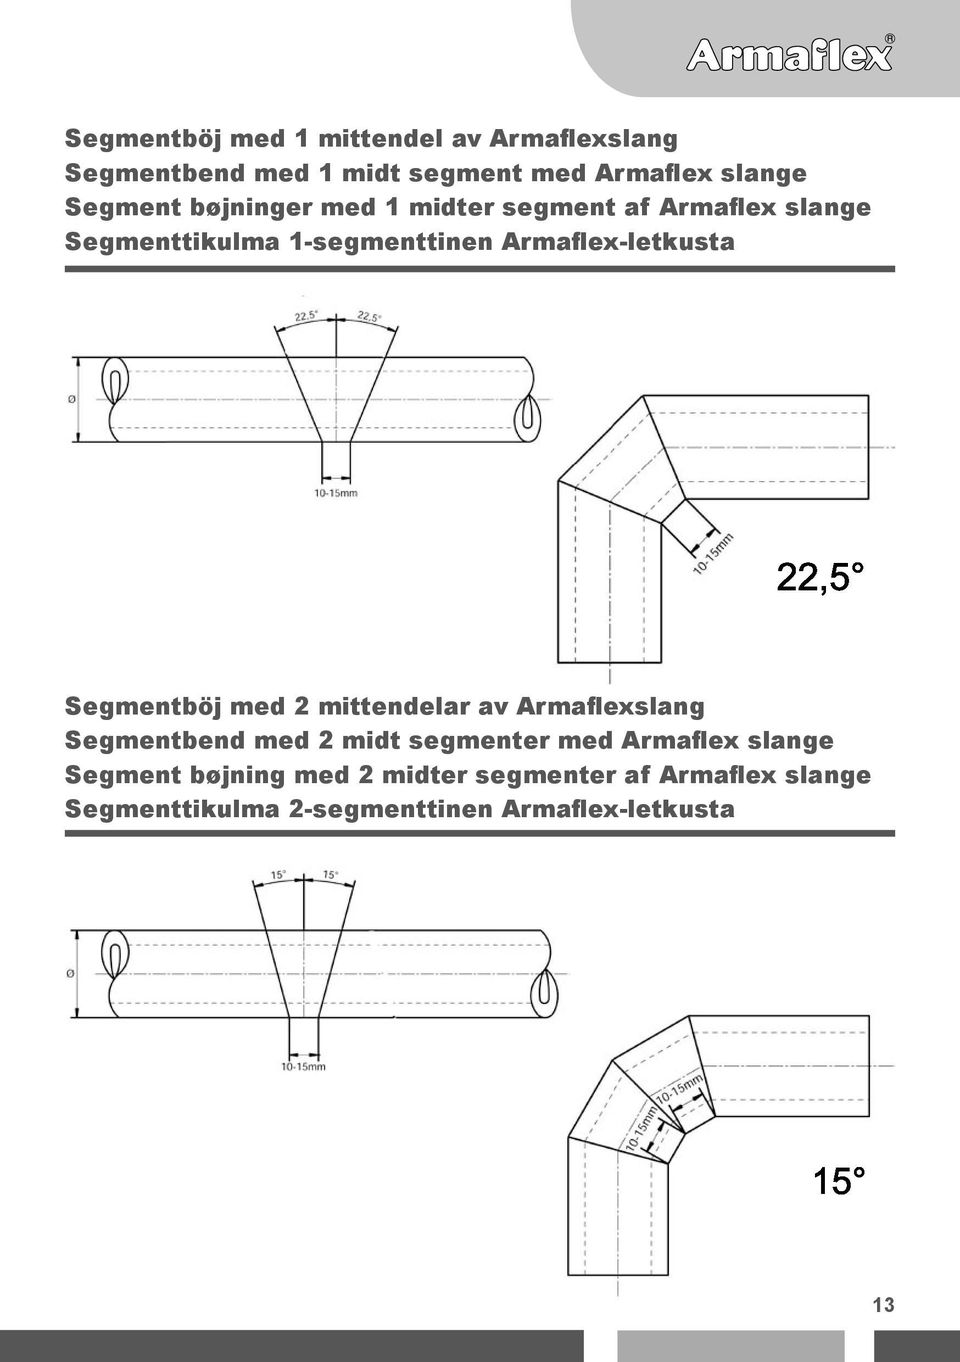 Armaflex-letkusta Segmentböj med 2 mittendelar av Armaflexslang Segmentbend med 2 midt segmenter med